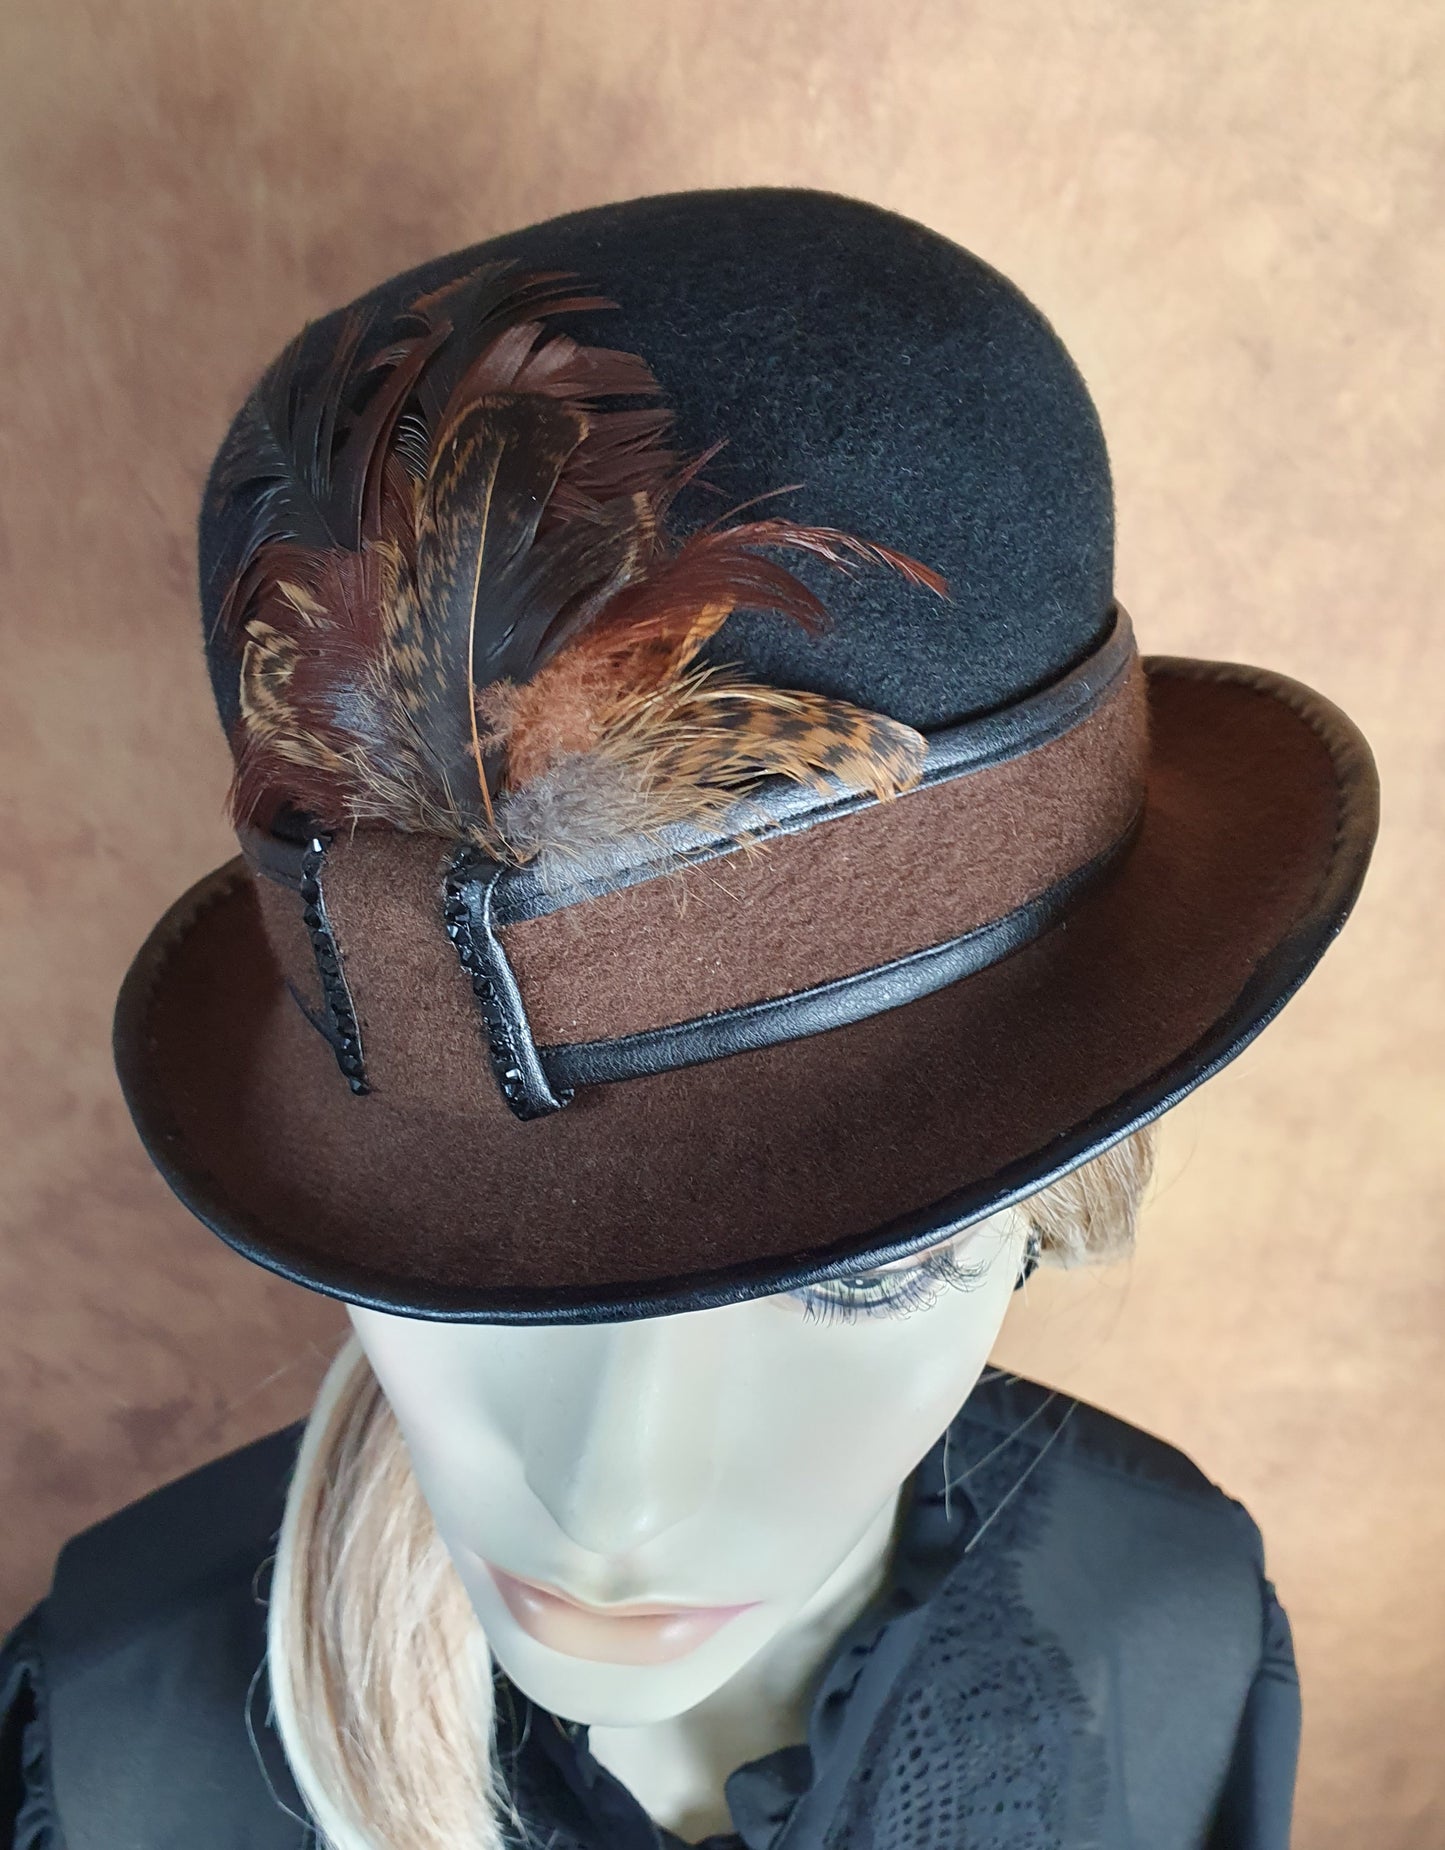 Handgemaakte zwart met bruin vilten bolhoed met haanveren, dames bolhoed, vintage bolhoed, derbyhoed, hoge hoed voor speciale evenementen